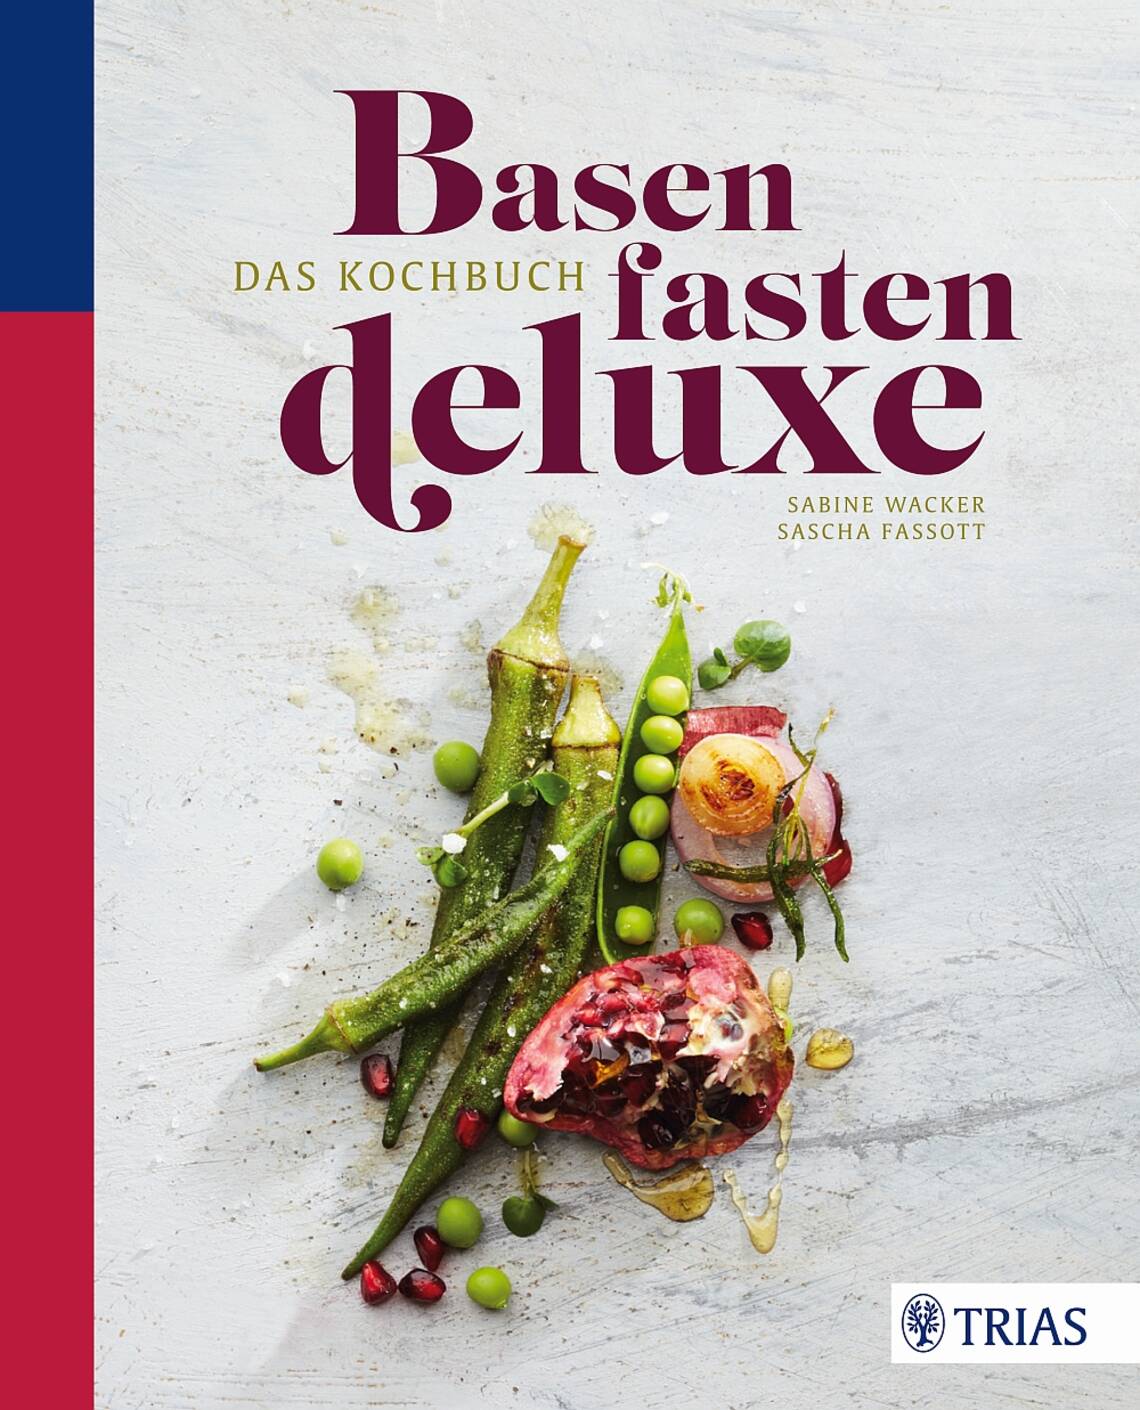 Basenfasten deluxe, das Kochbuch von Sabine Wacker